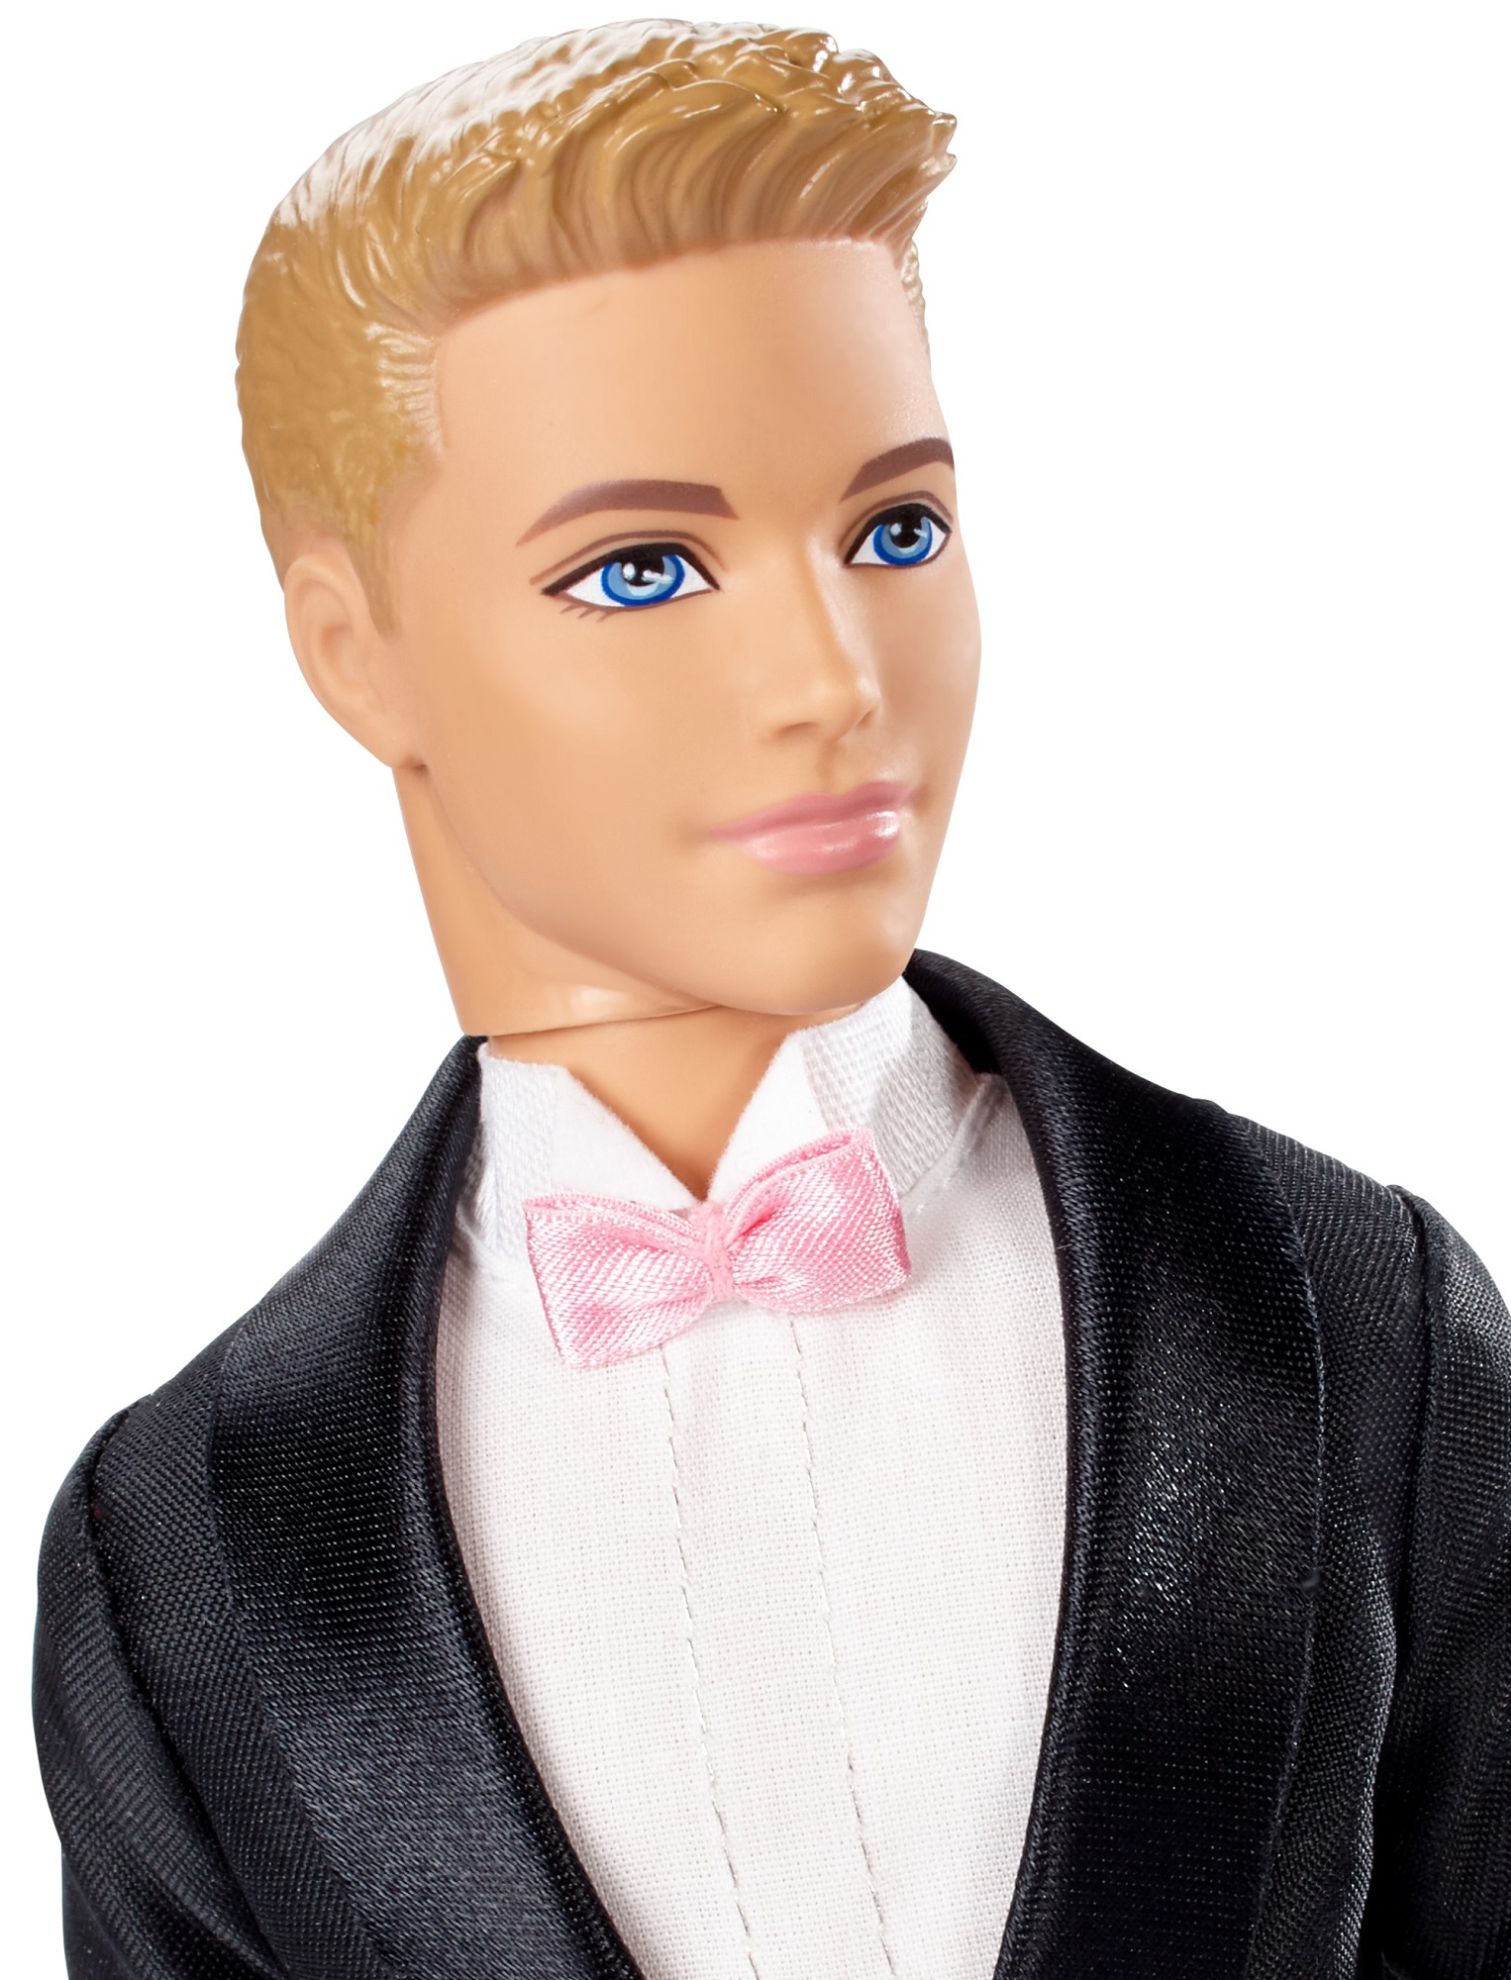 Ken sposo - barbie - Barbie